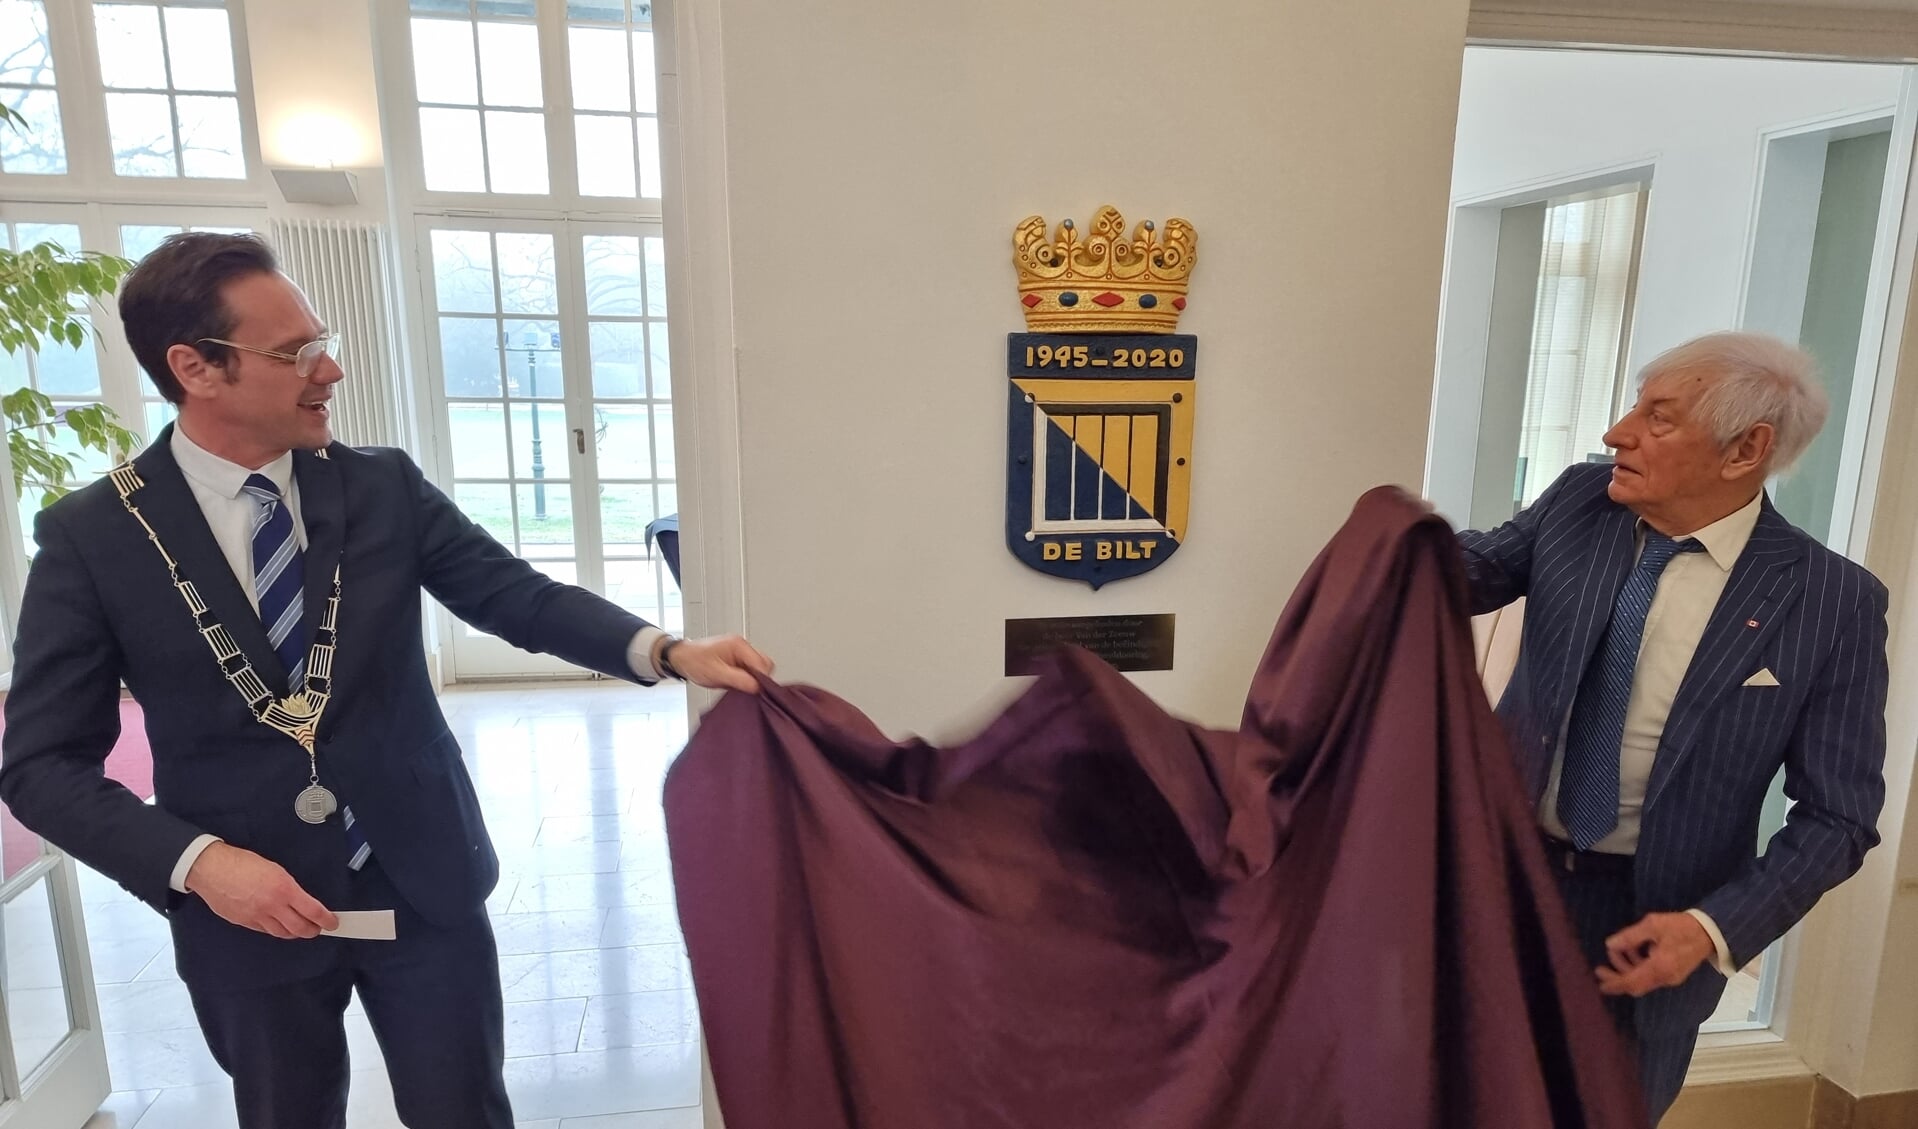 Burgemeester Potters en Philippe van der Zeeuw onthullen het kunstwerk op Jagtlust.